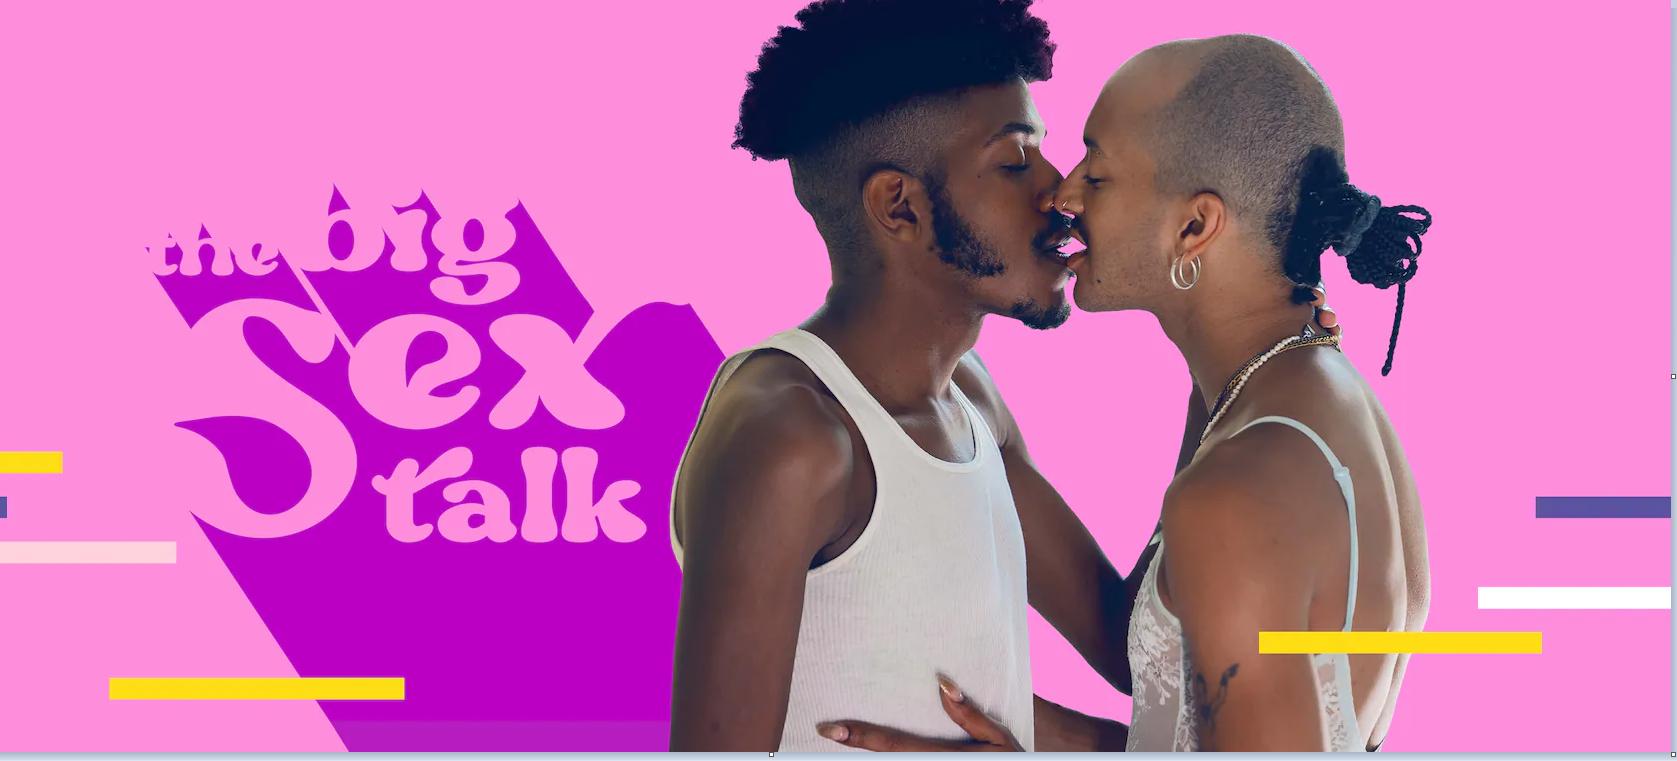 The Big Sex Talk